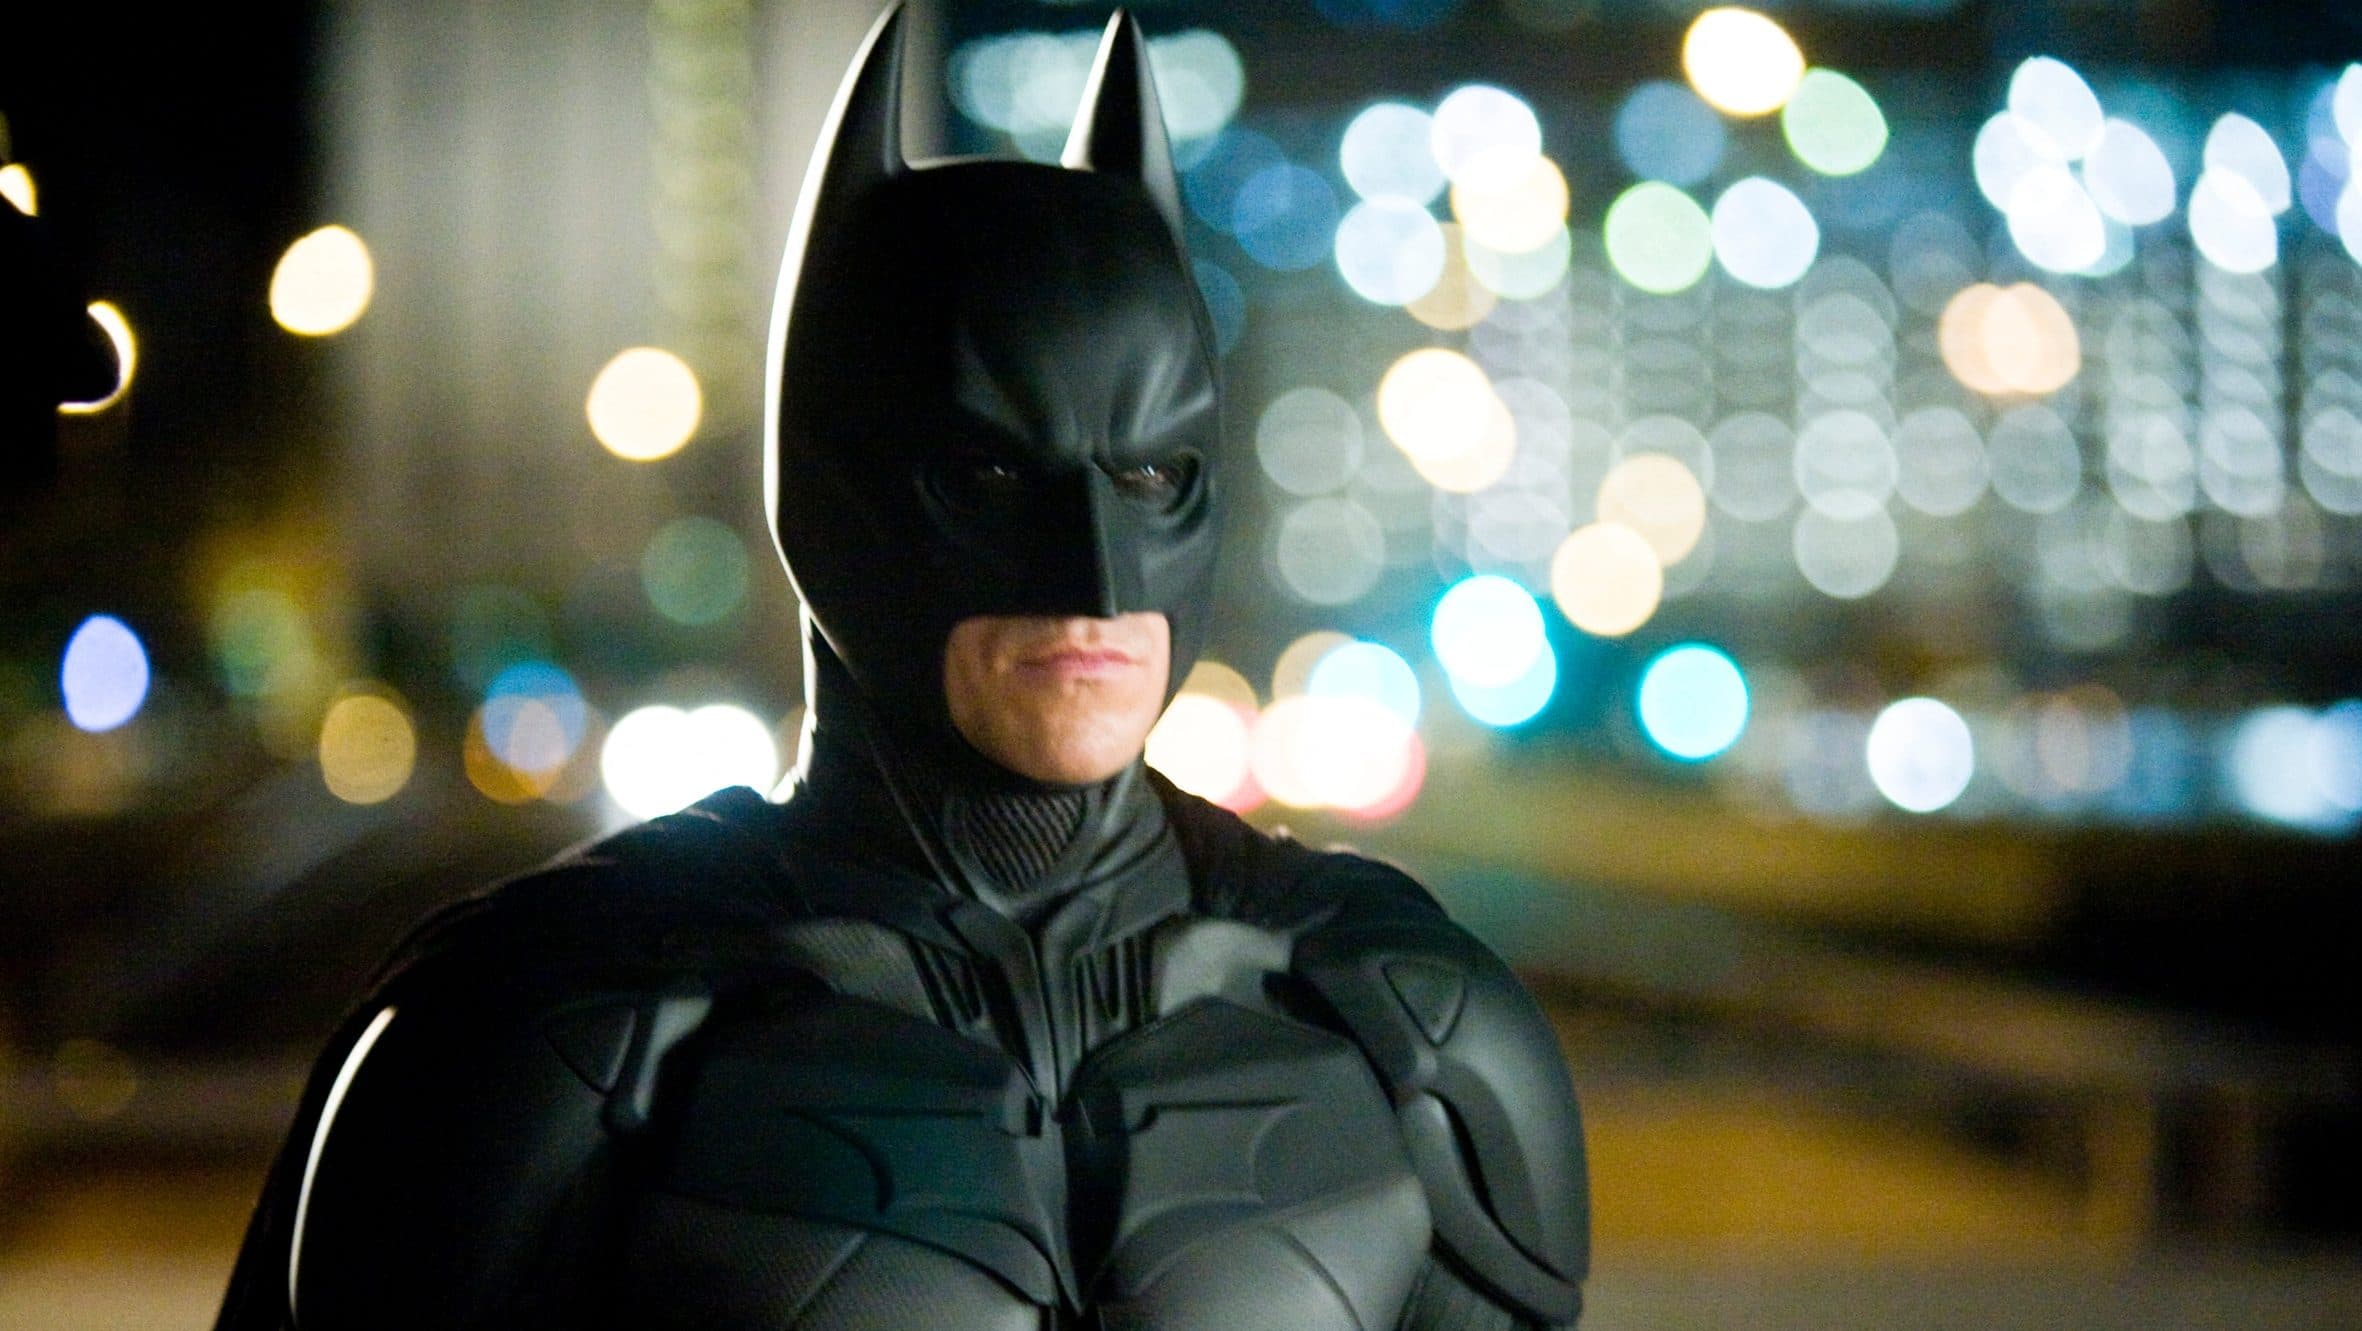 George Clooney, Christian Bale, Ben Affleck? – ki volt a legjobb színész Batman szerepében?